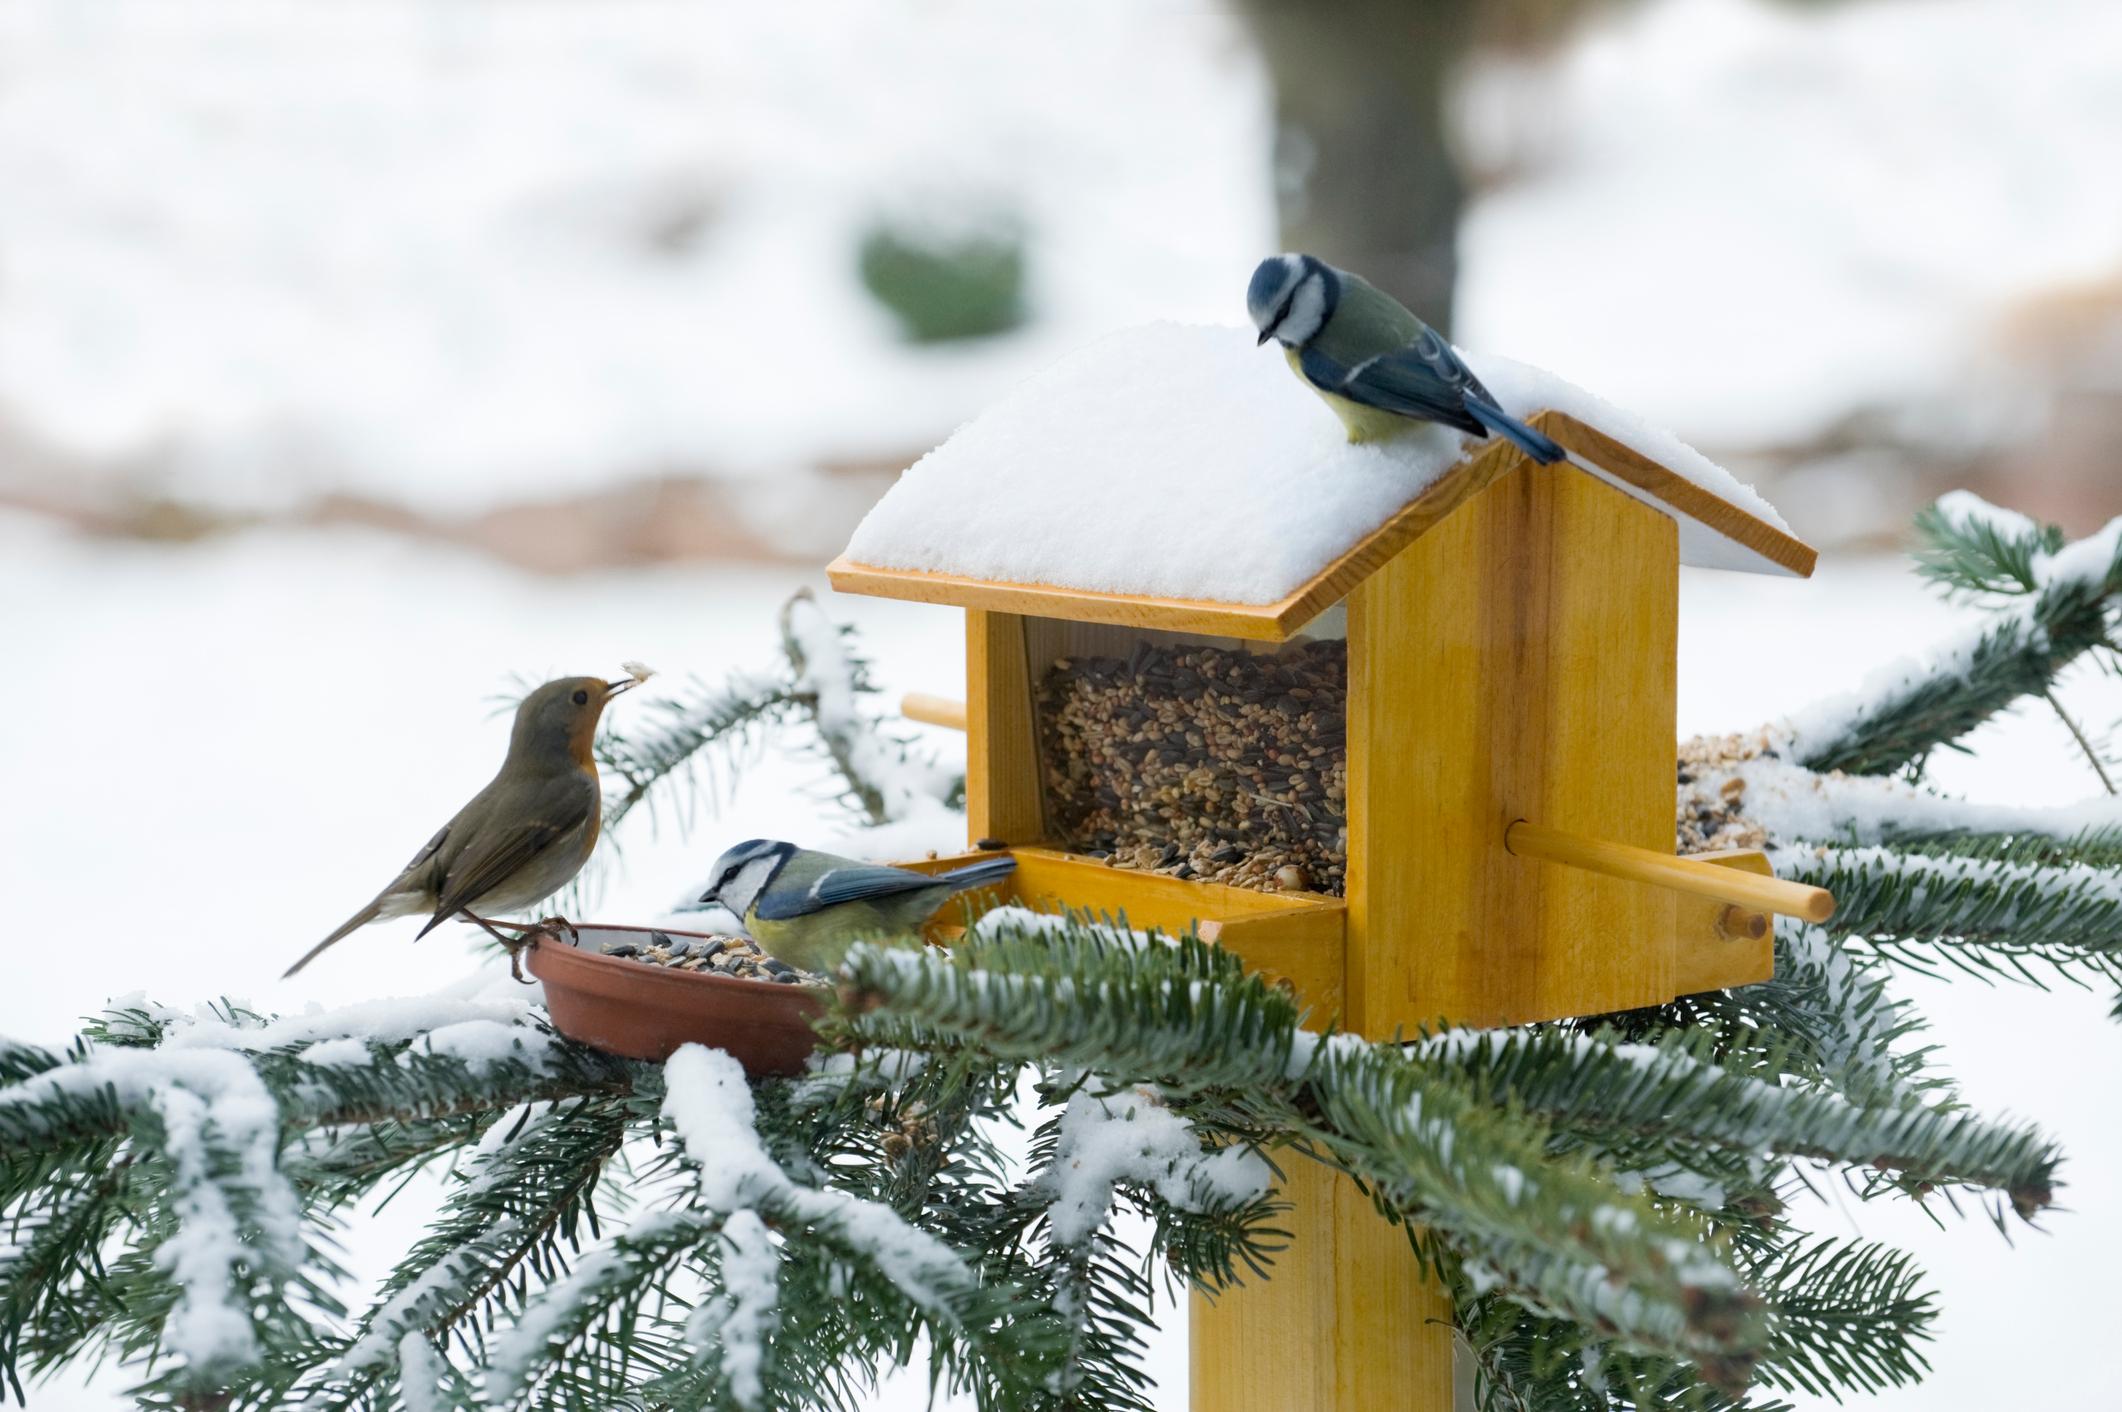  Vögel füttern im Winter